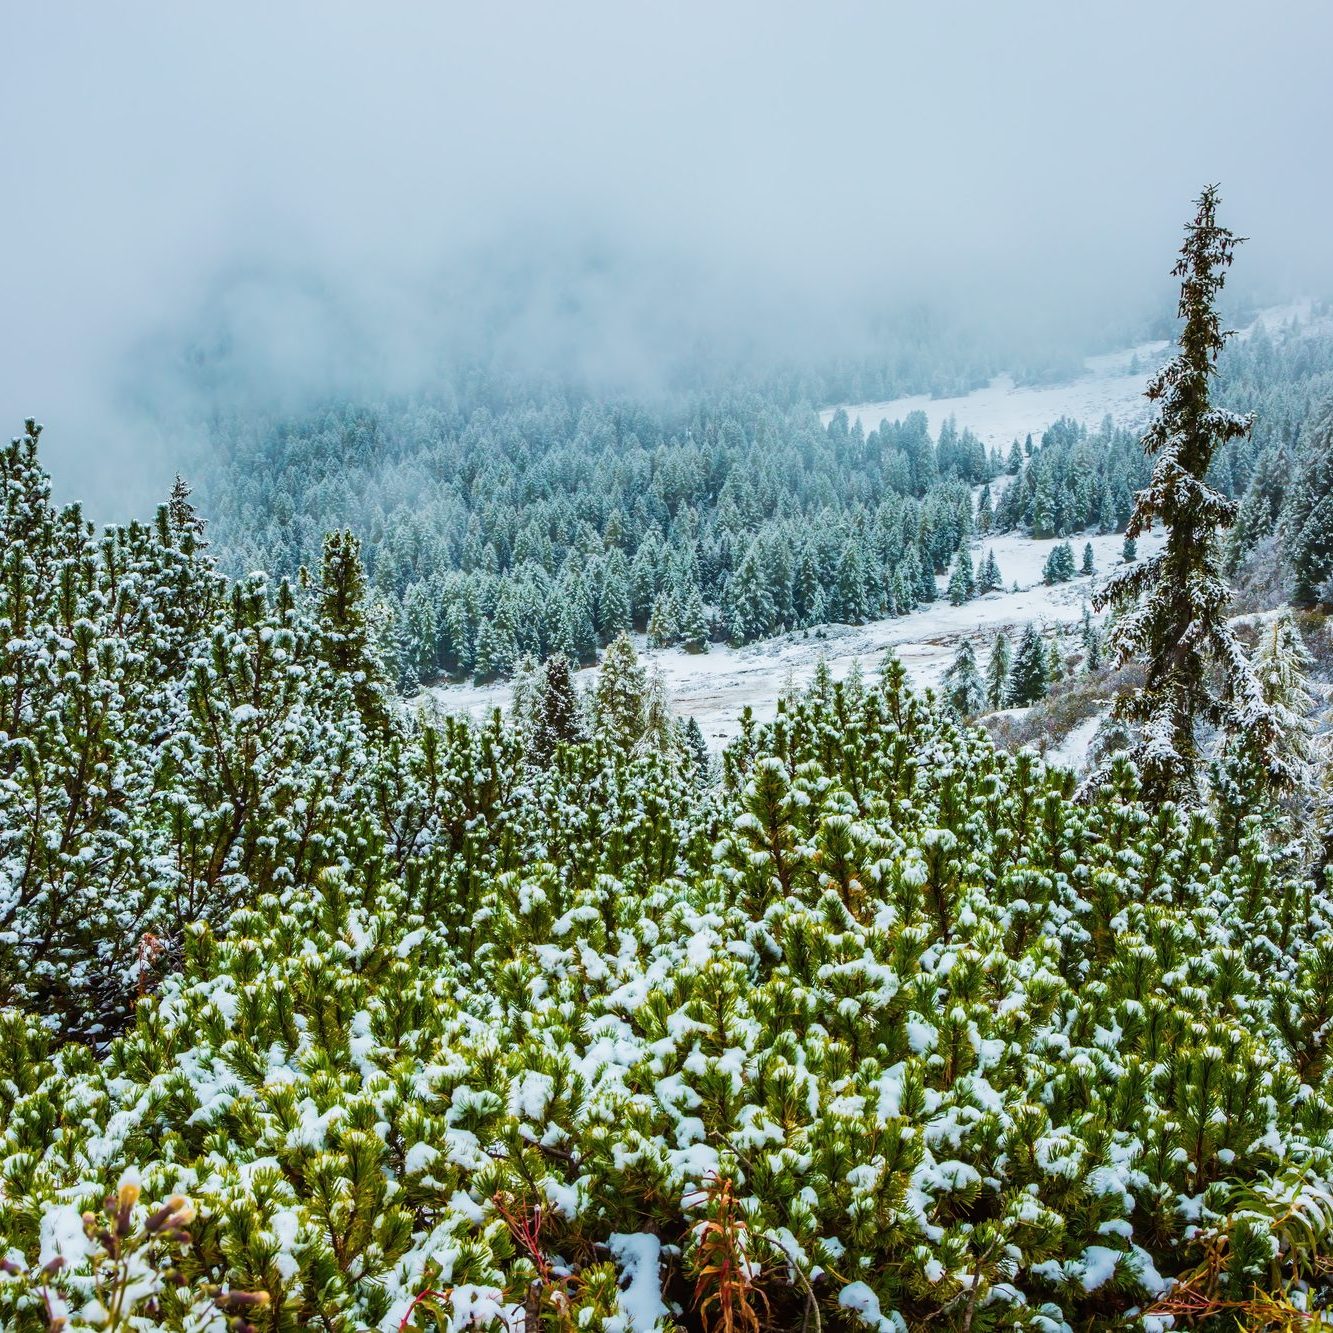 Snow on mountain pine trees